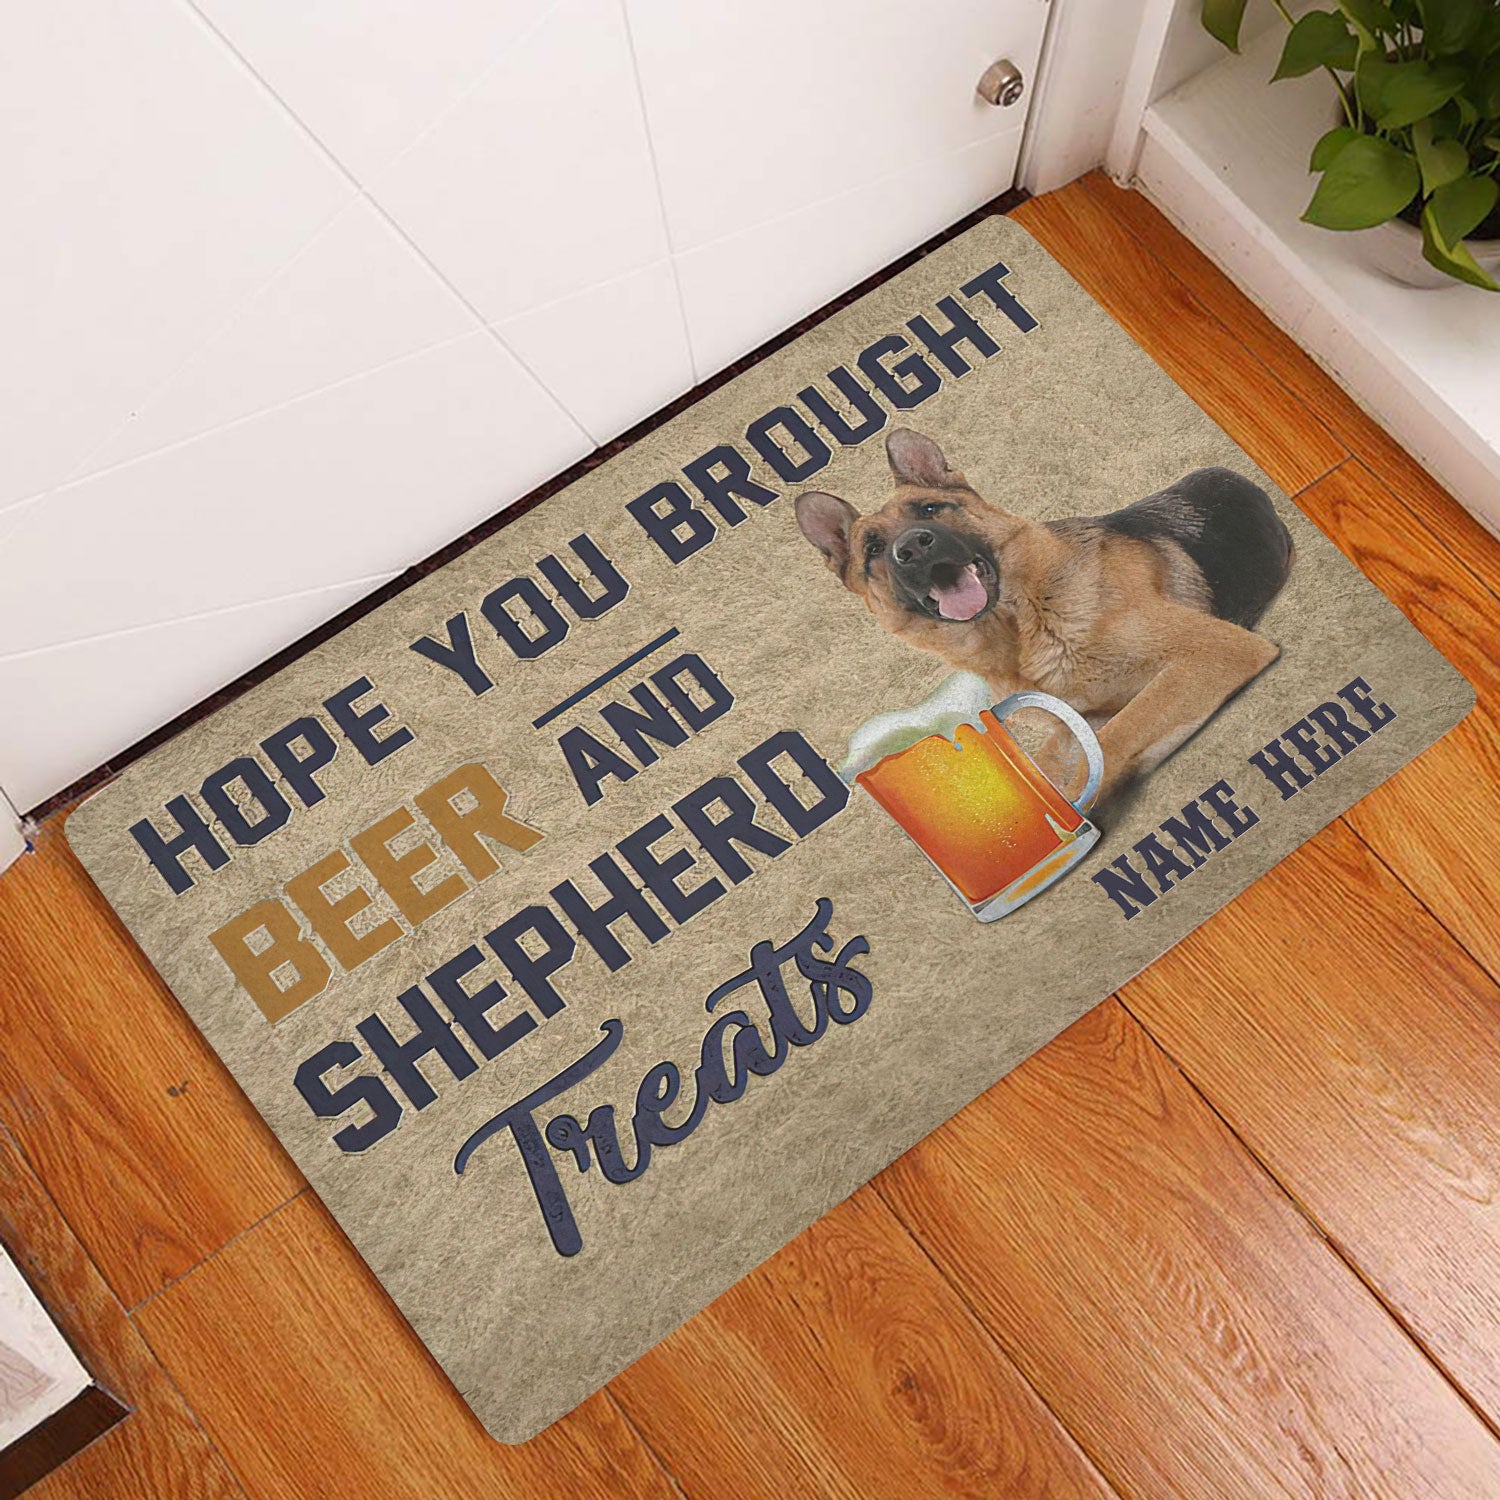 Ohaprints-Doormat-Outdoor-Indoor-Brought-Beer-And-Shepherd-Treat-Custom-Personalized-Name-Rubber-Door-Mat-1969-